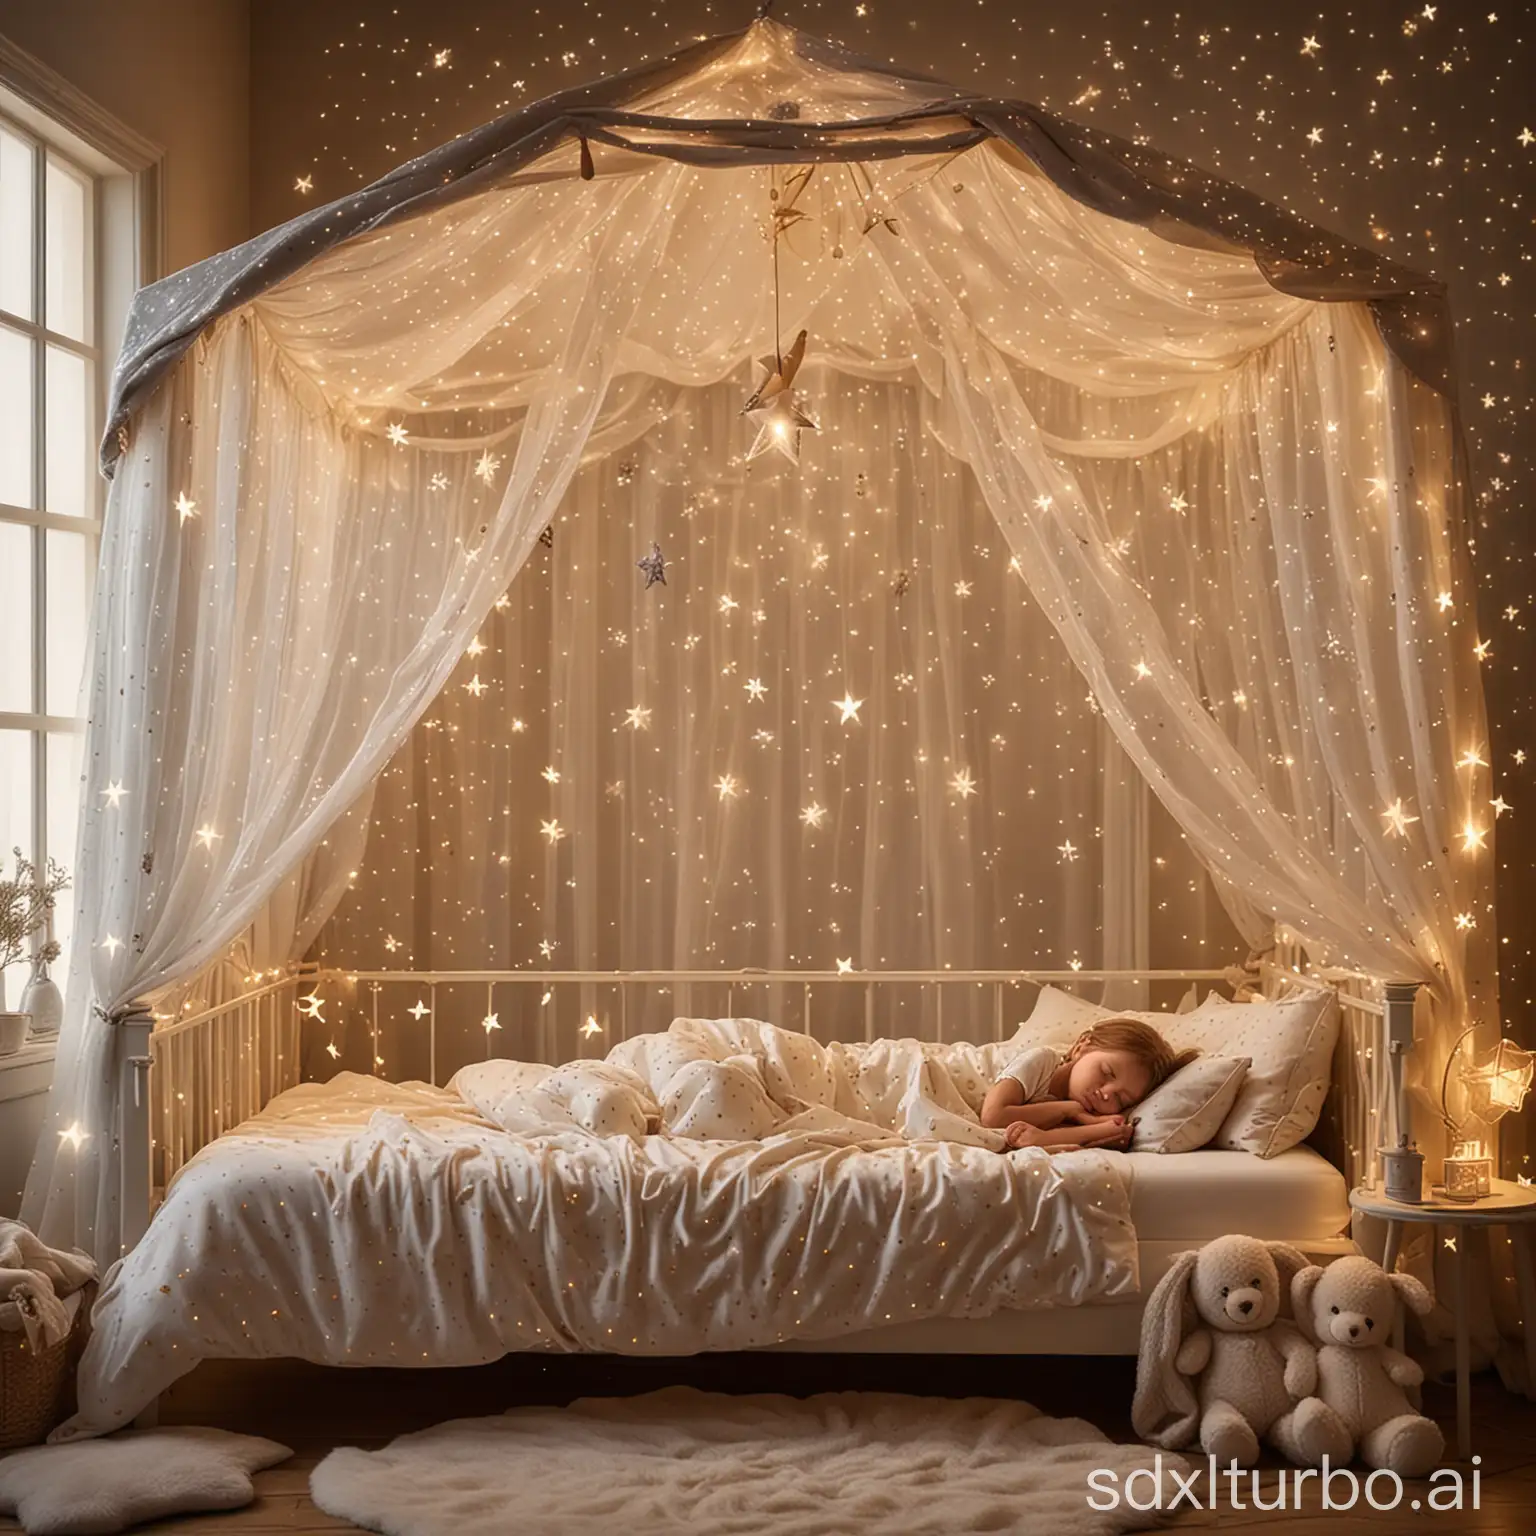  Ein Kind schläft auf einem Himmelbett mit einem Baldachin aus schimmernden Sternenlichtern. Das Bettzeug ist weich und kuschelig, und der kleine Träumer hält eine Sternschnuppe aus Plüsch fest in den Armen. Durch das Fenster scheinen echte Sterne herein und tauchen das Zimmer in ein sanftes, magisches Licht.